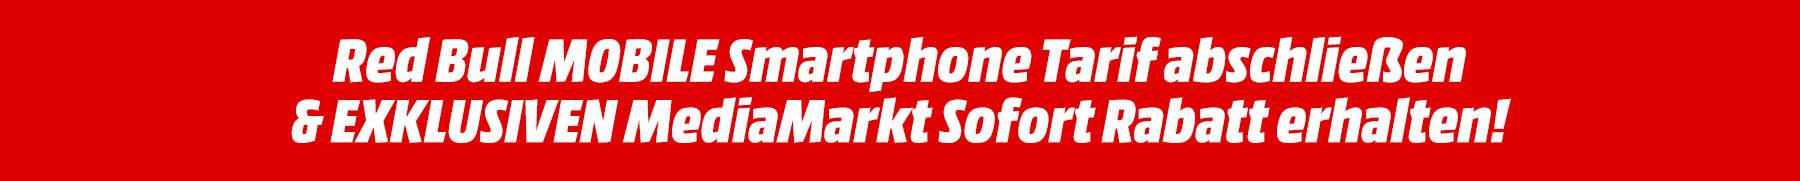 RedBull Mobile SpecialContent Markt Banner